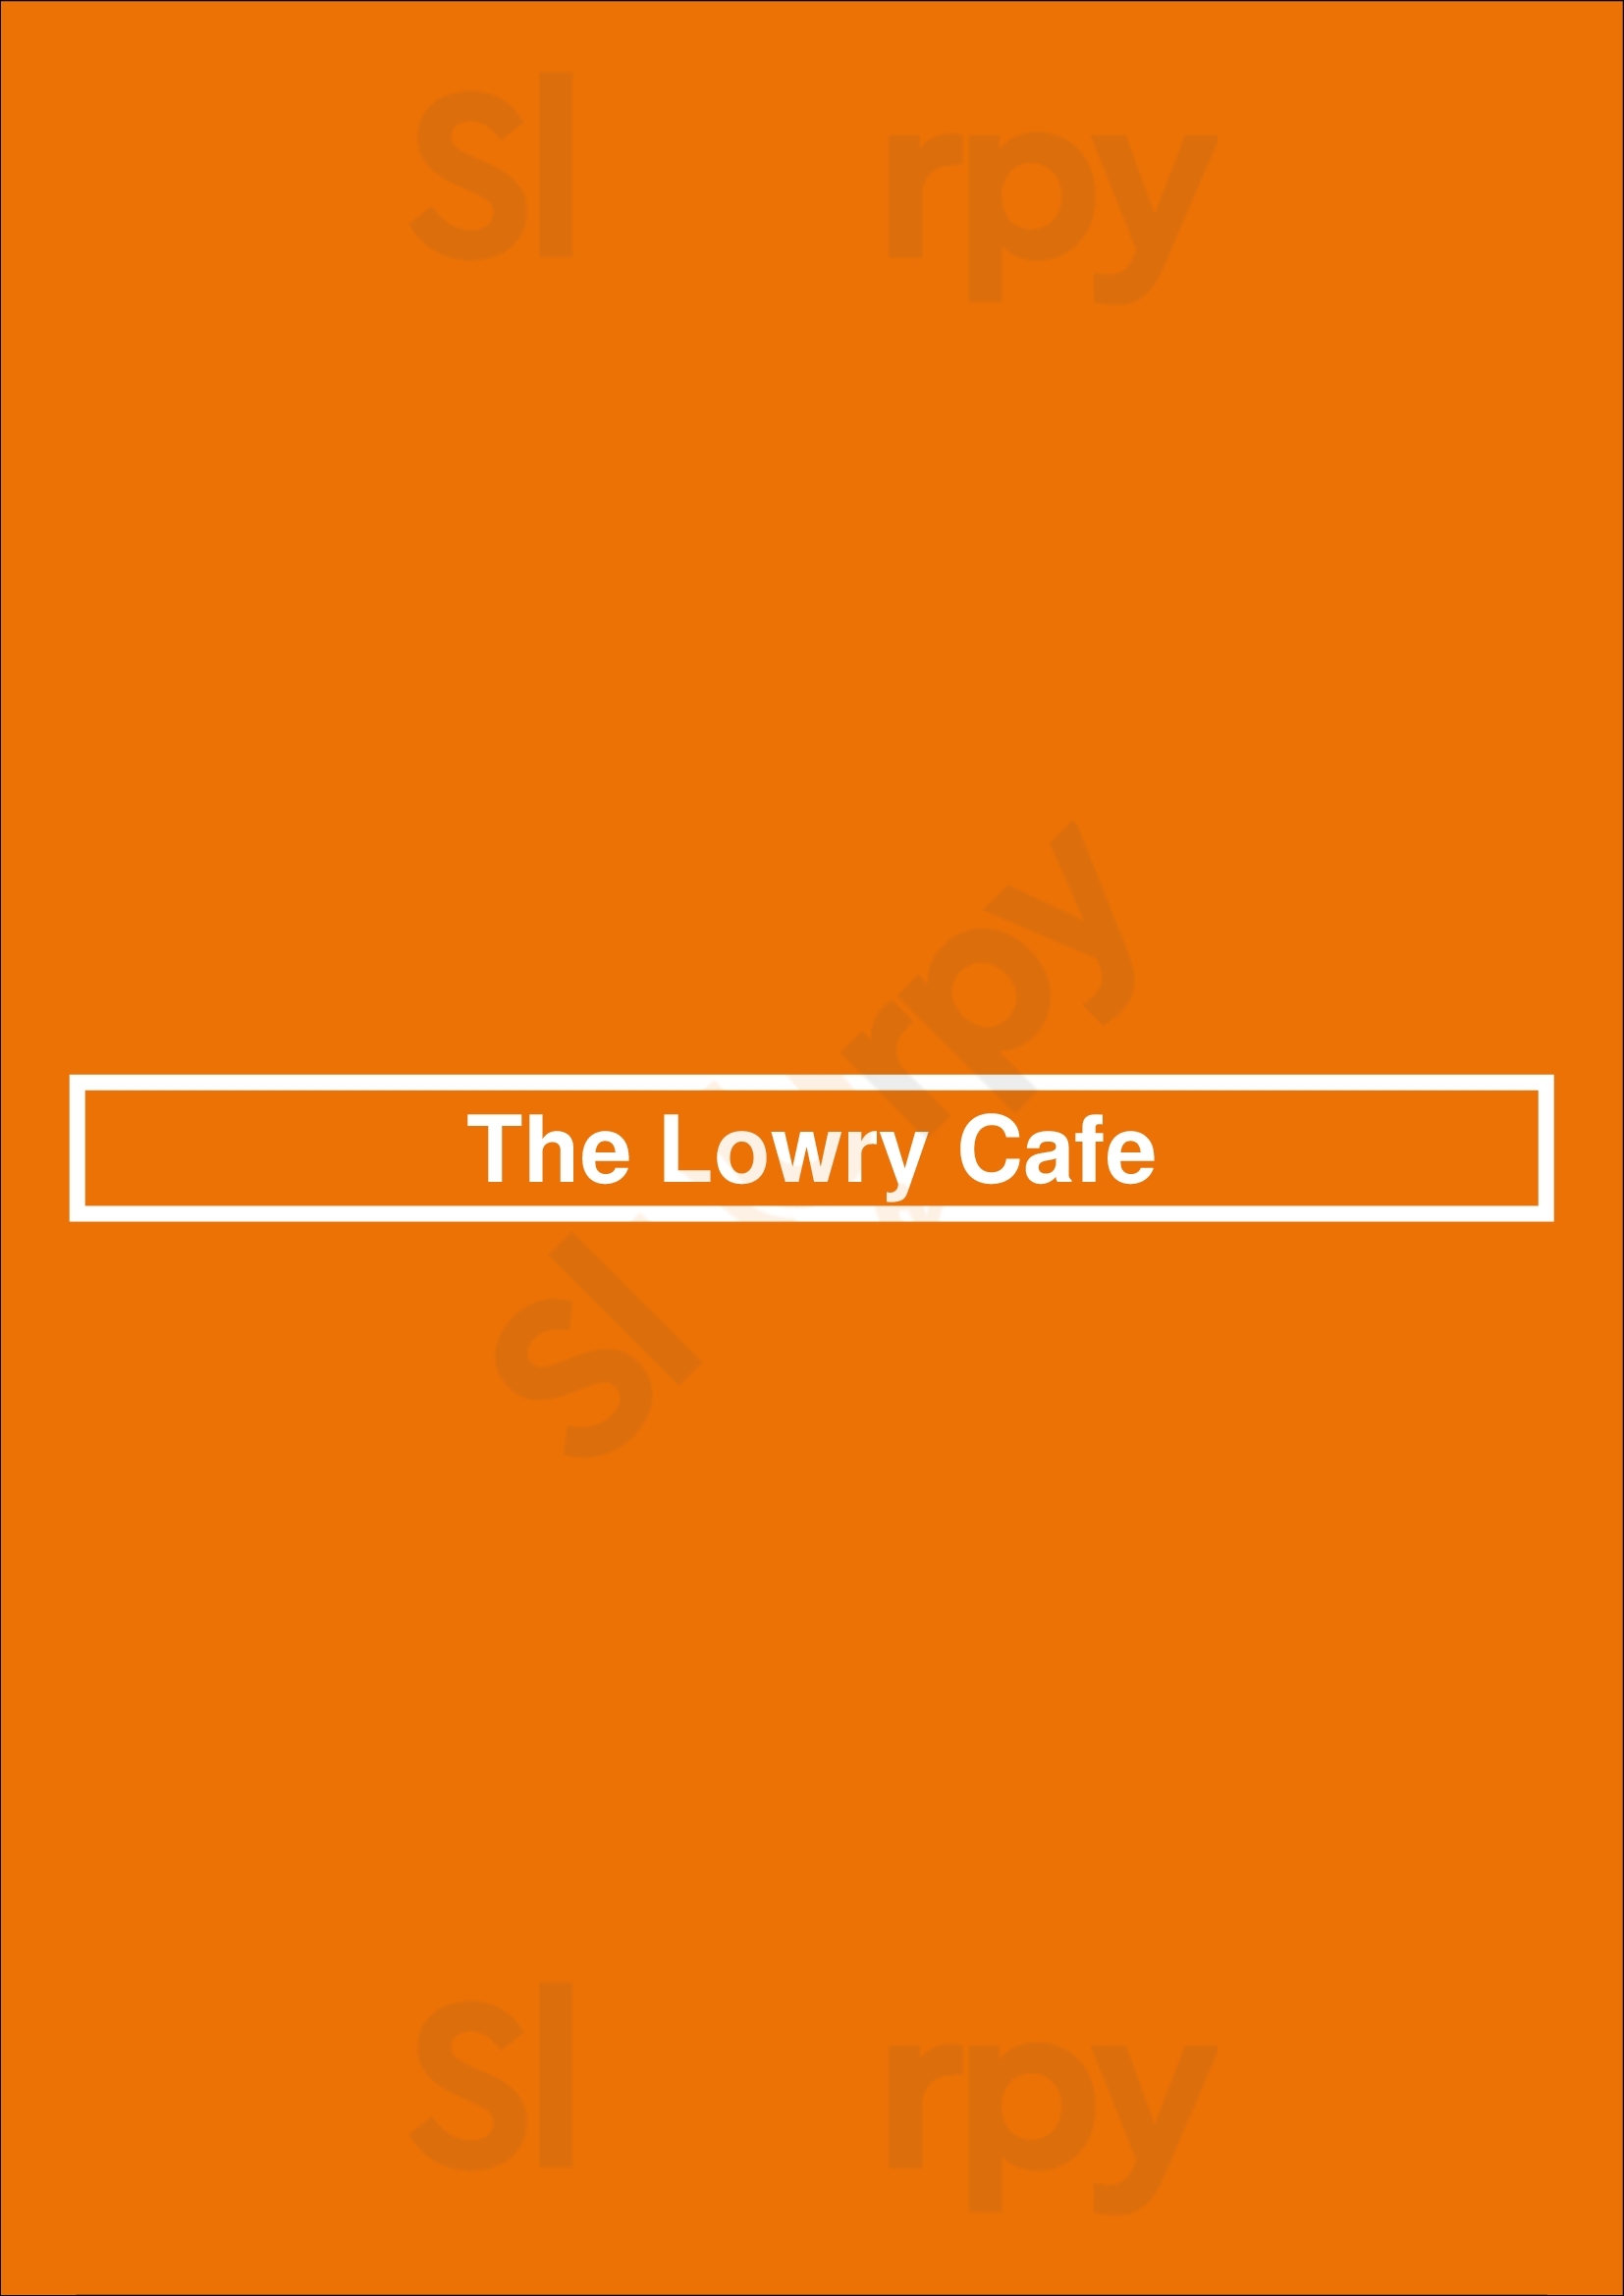 The Lowry Cafe Minneapolis Menu - 1